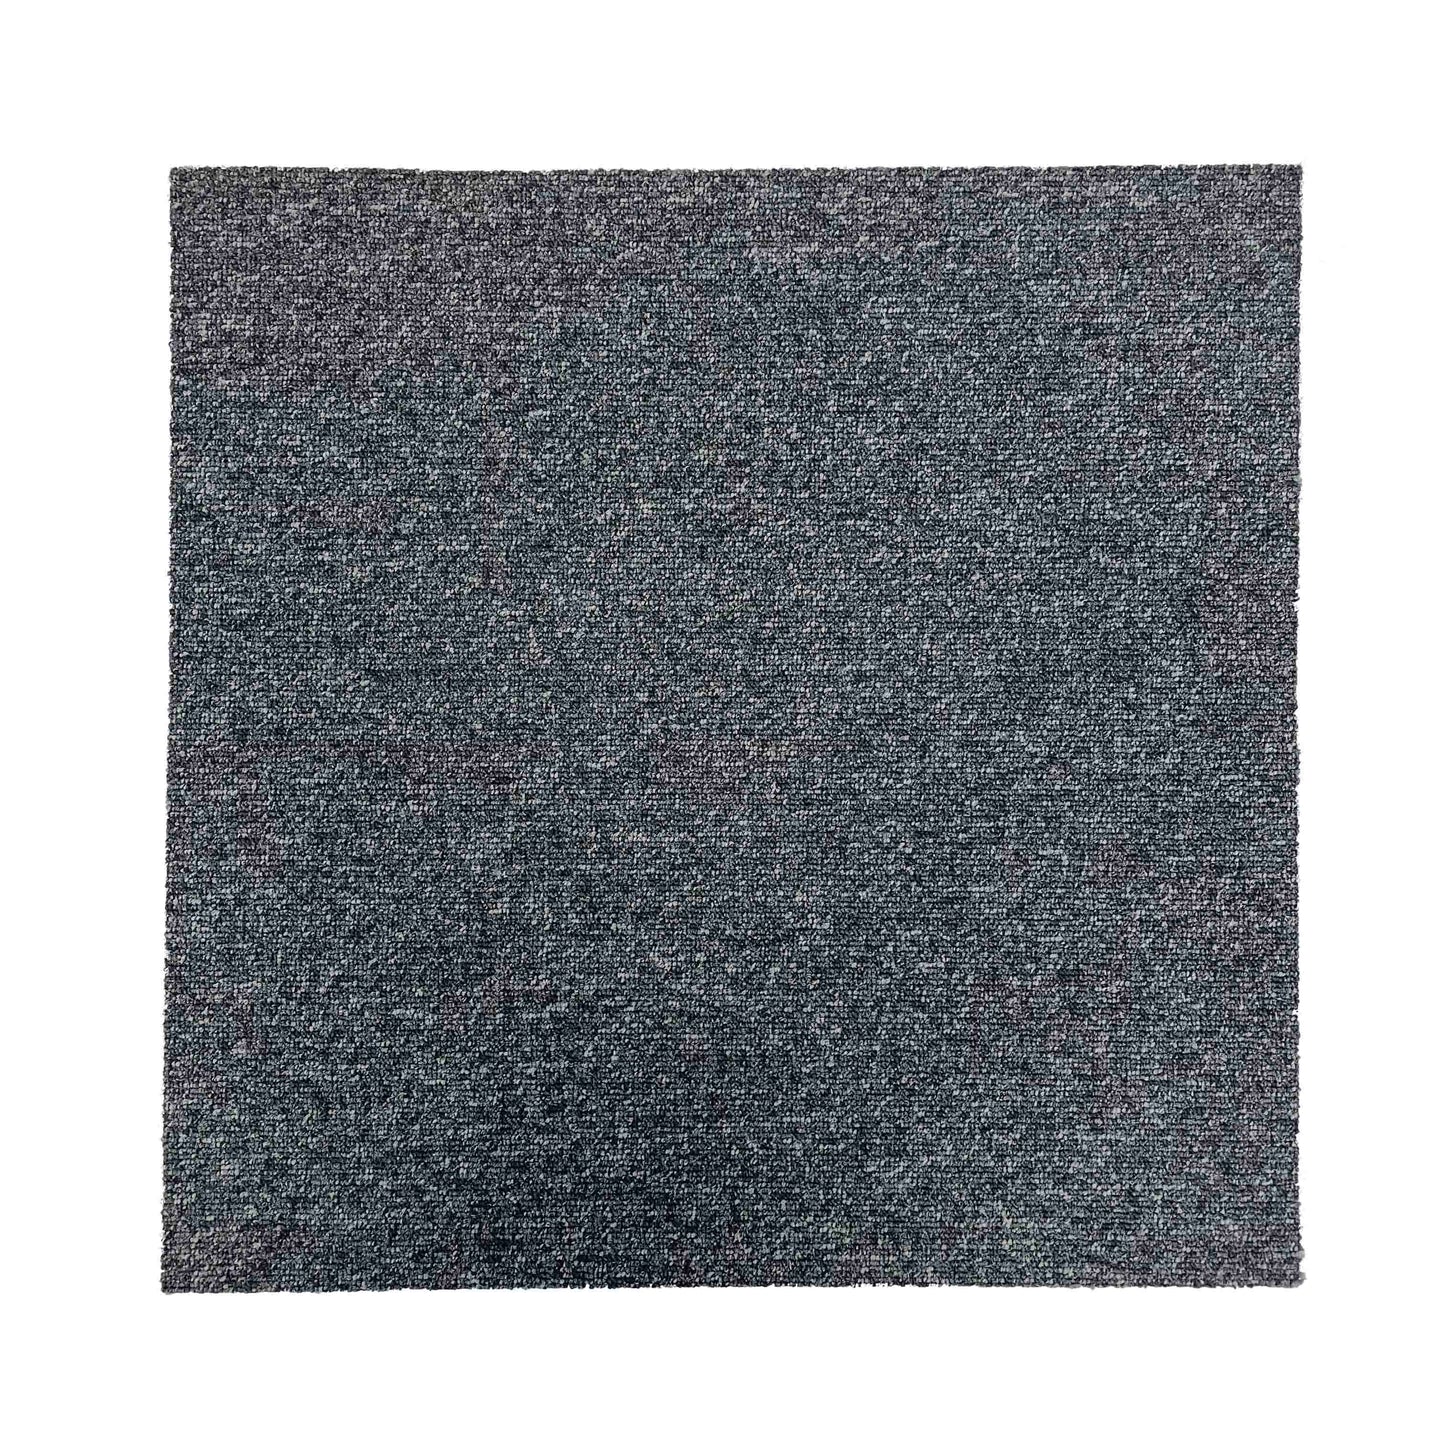 Graphite Speckled Grey Carpet Tiles